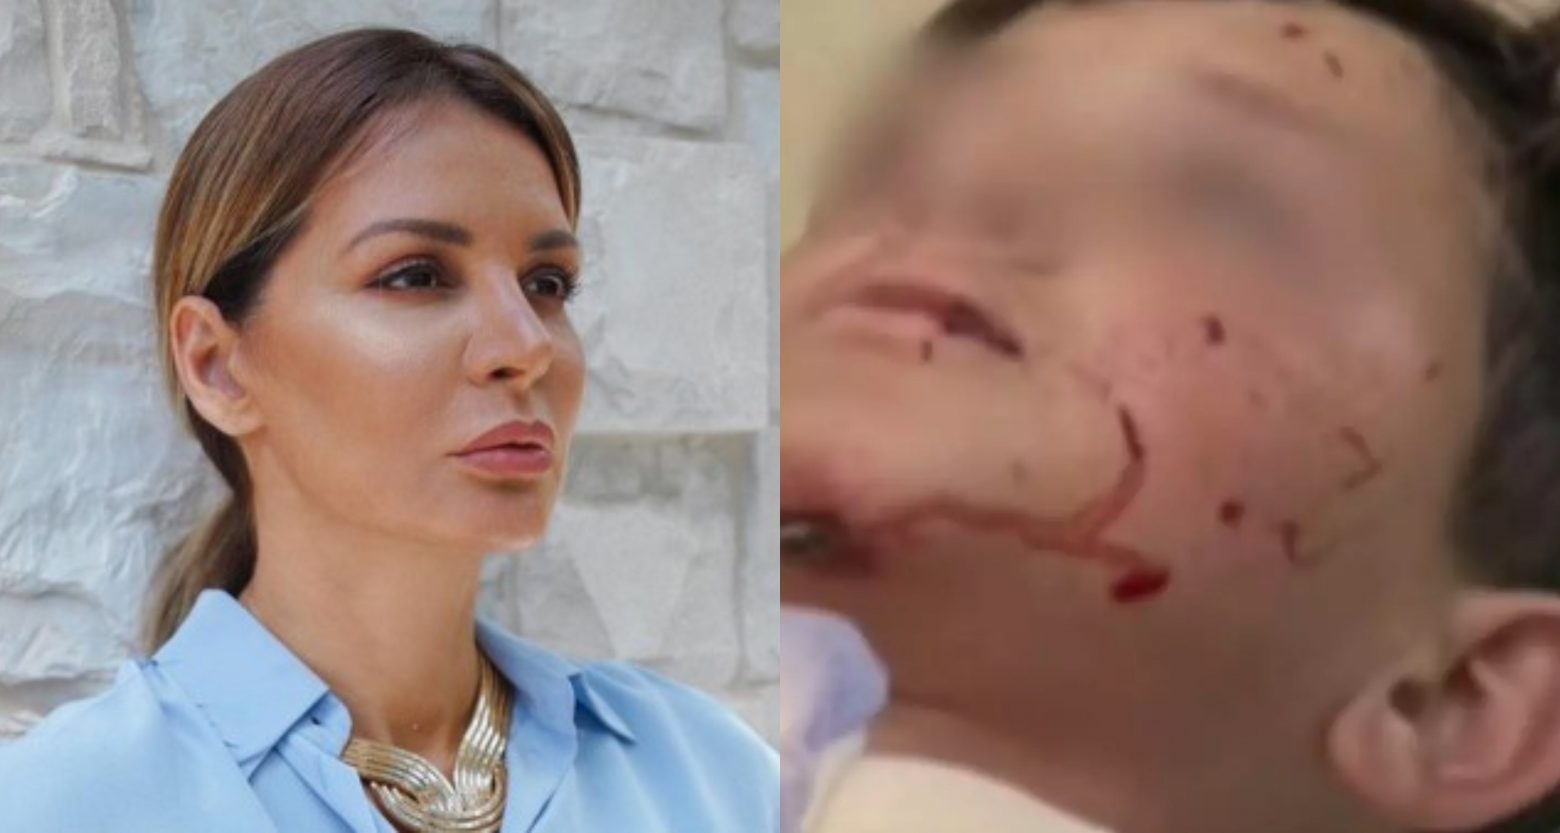 Μαρία Καλάβρια: Ο ανιψιός της δέχθηκε επίθεση από σκύλο - «Έχει σοβαρά τραύματα στον λαιμό και το πρόσωπο»